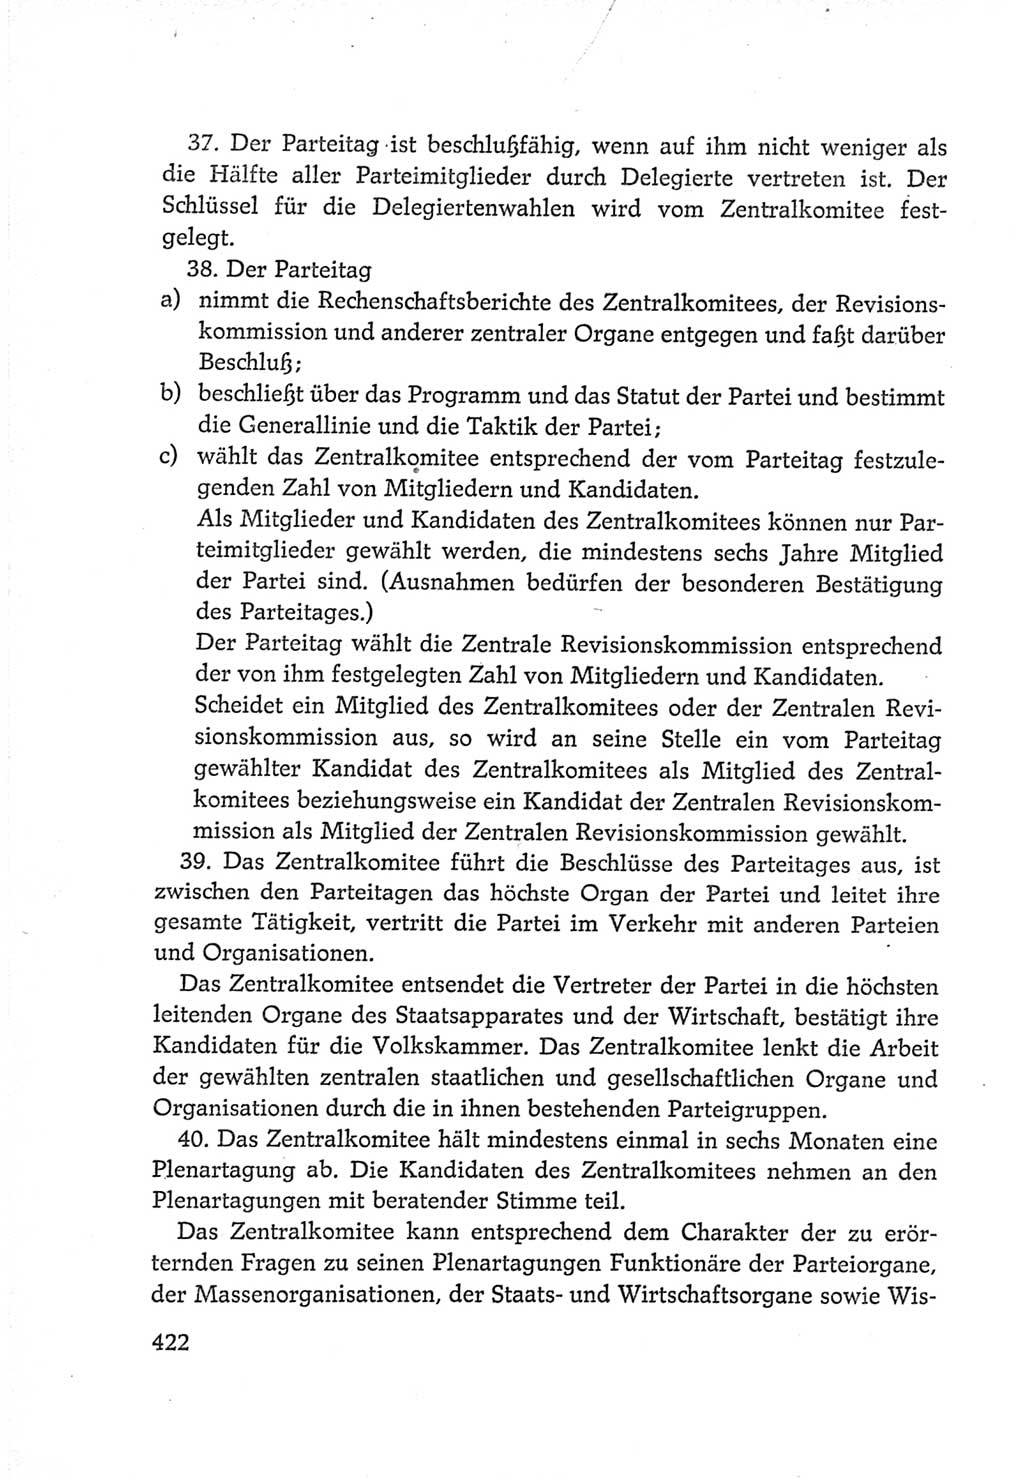 Protokoll der Verhandlungen des Ⅵ. Parteitages der Sozialistischen Einheitspartei Deutschlands (SED) [Deutsche Demokratische Republik (DDR)] 1963, Band Ⅳ, Seite 422 (Prot. Verh. Ⅵ. PT SED DDR 1963, Bd. Ⅳ, S. 422)